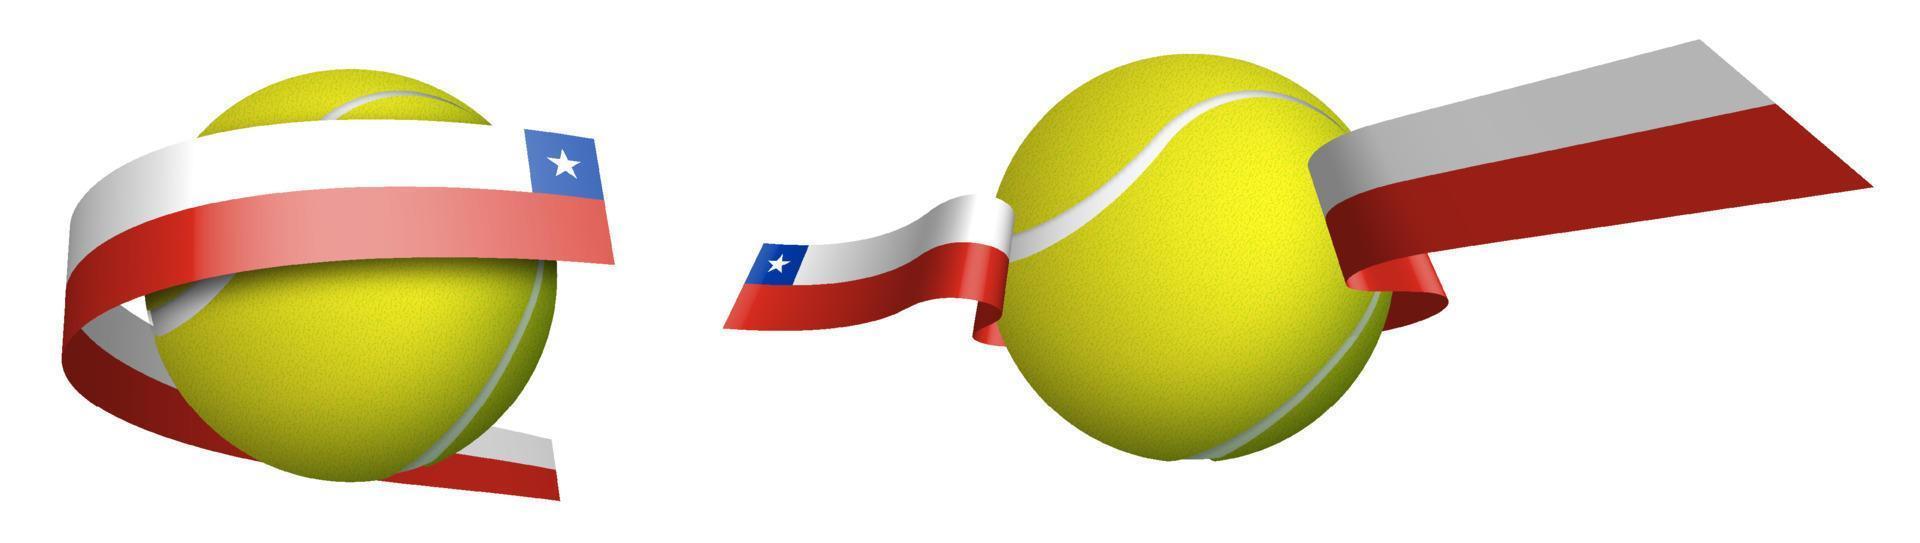 Esportes tênis bola dentro fitas com cores do Chile bandeira. isolado vetor em branco fundo